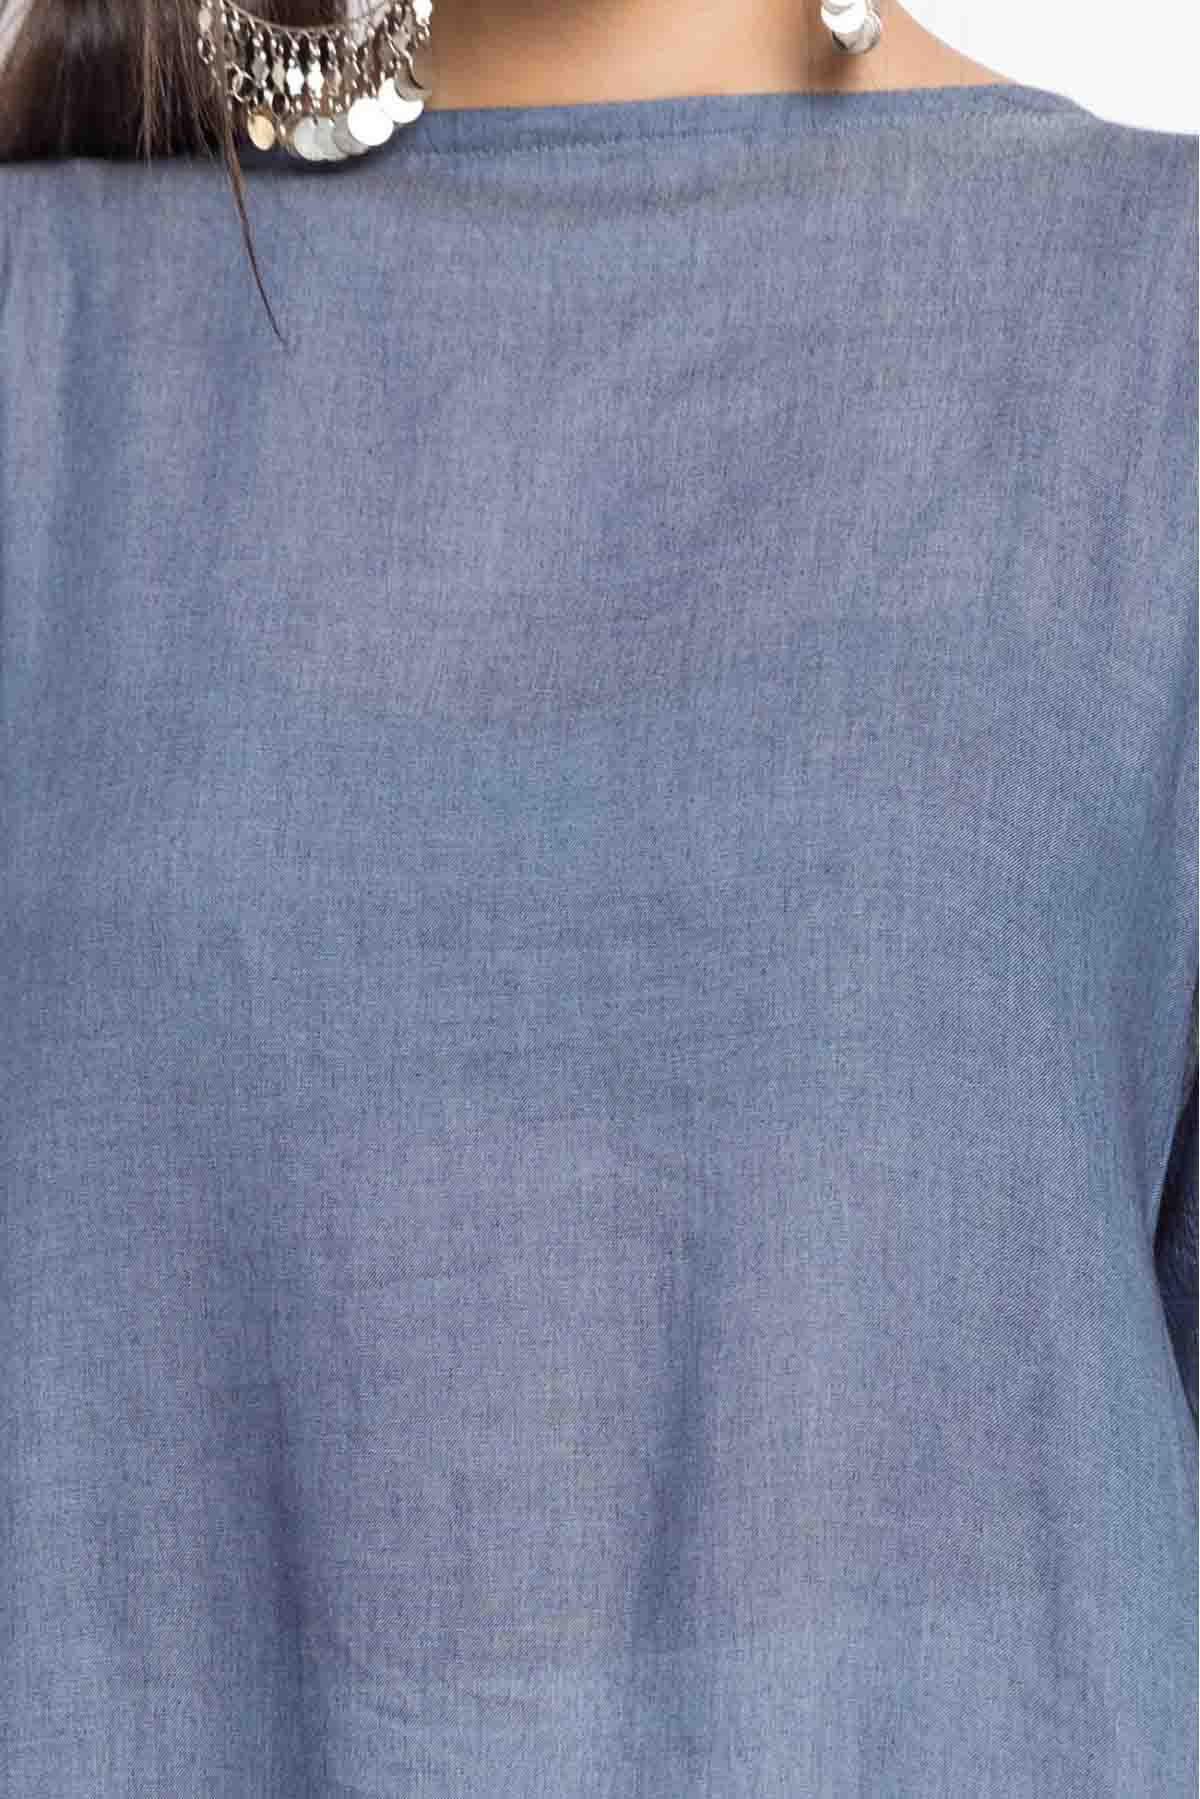 Grey Colour Plus Size Stitched Cotton Churidar Suit